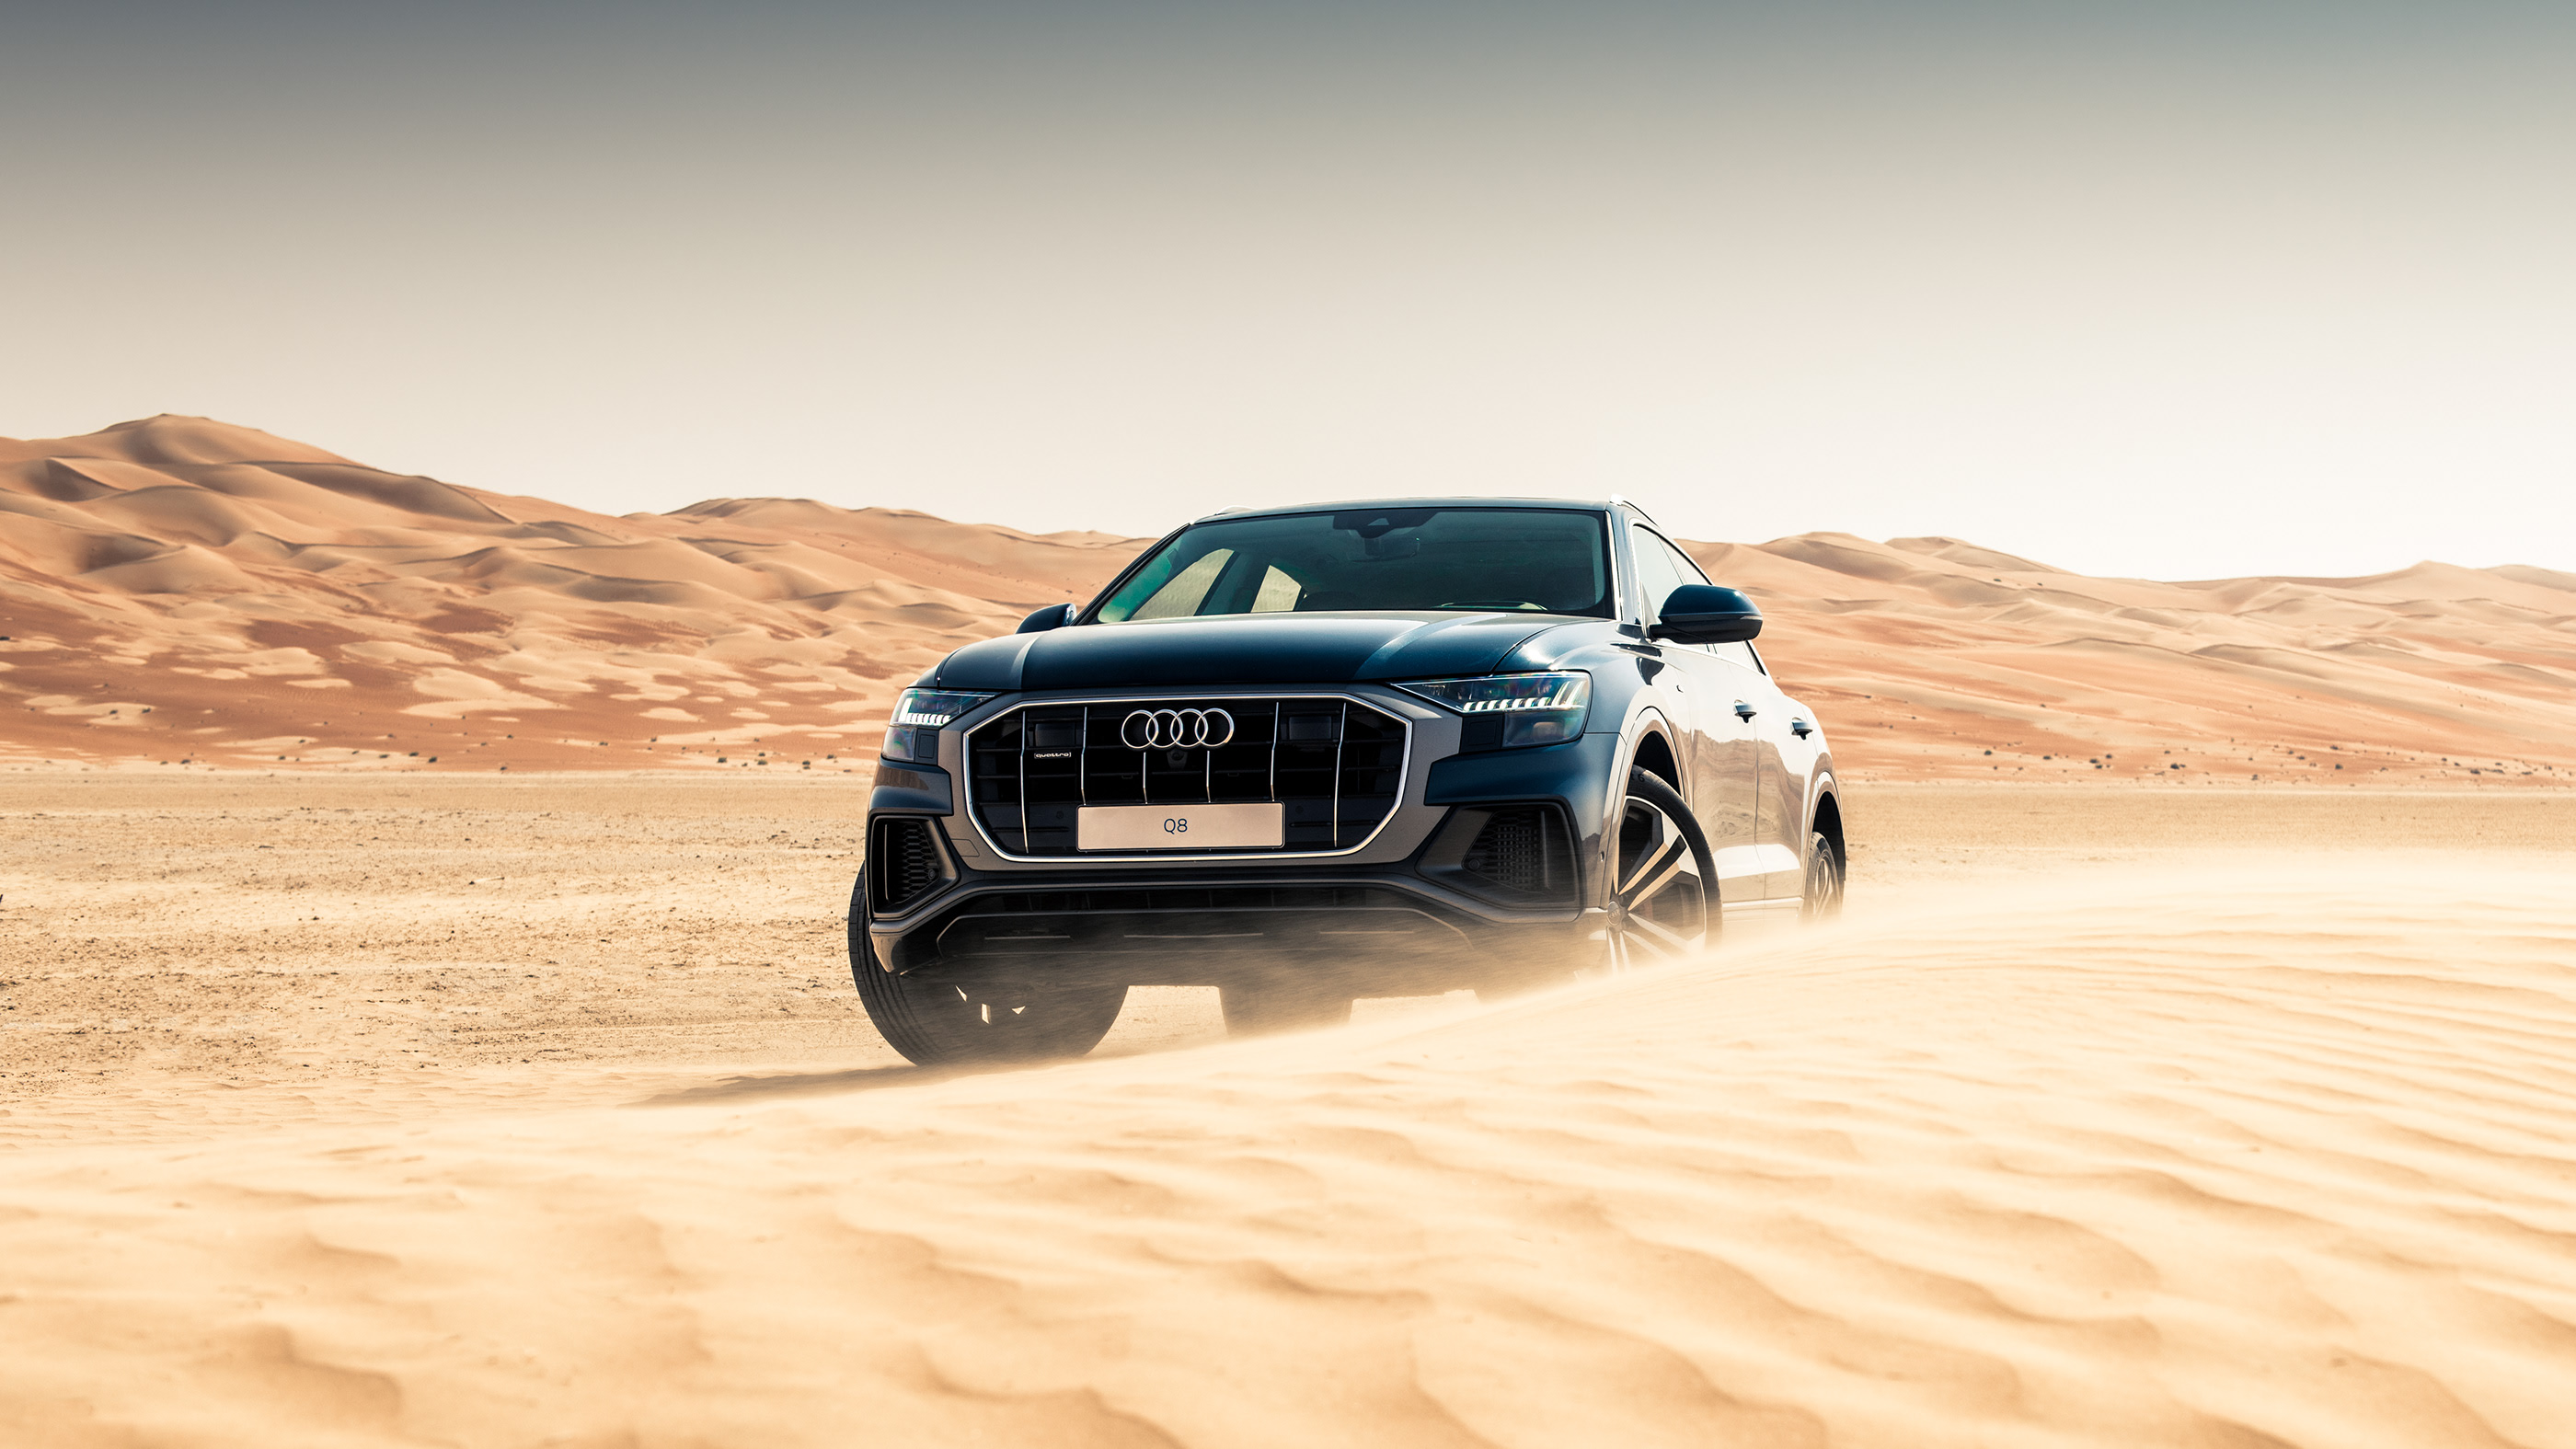 Dubai cars пустыня фон